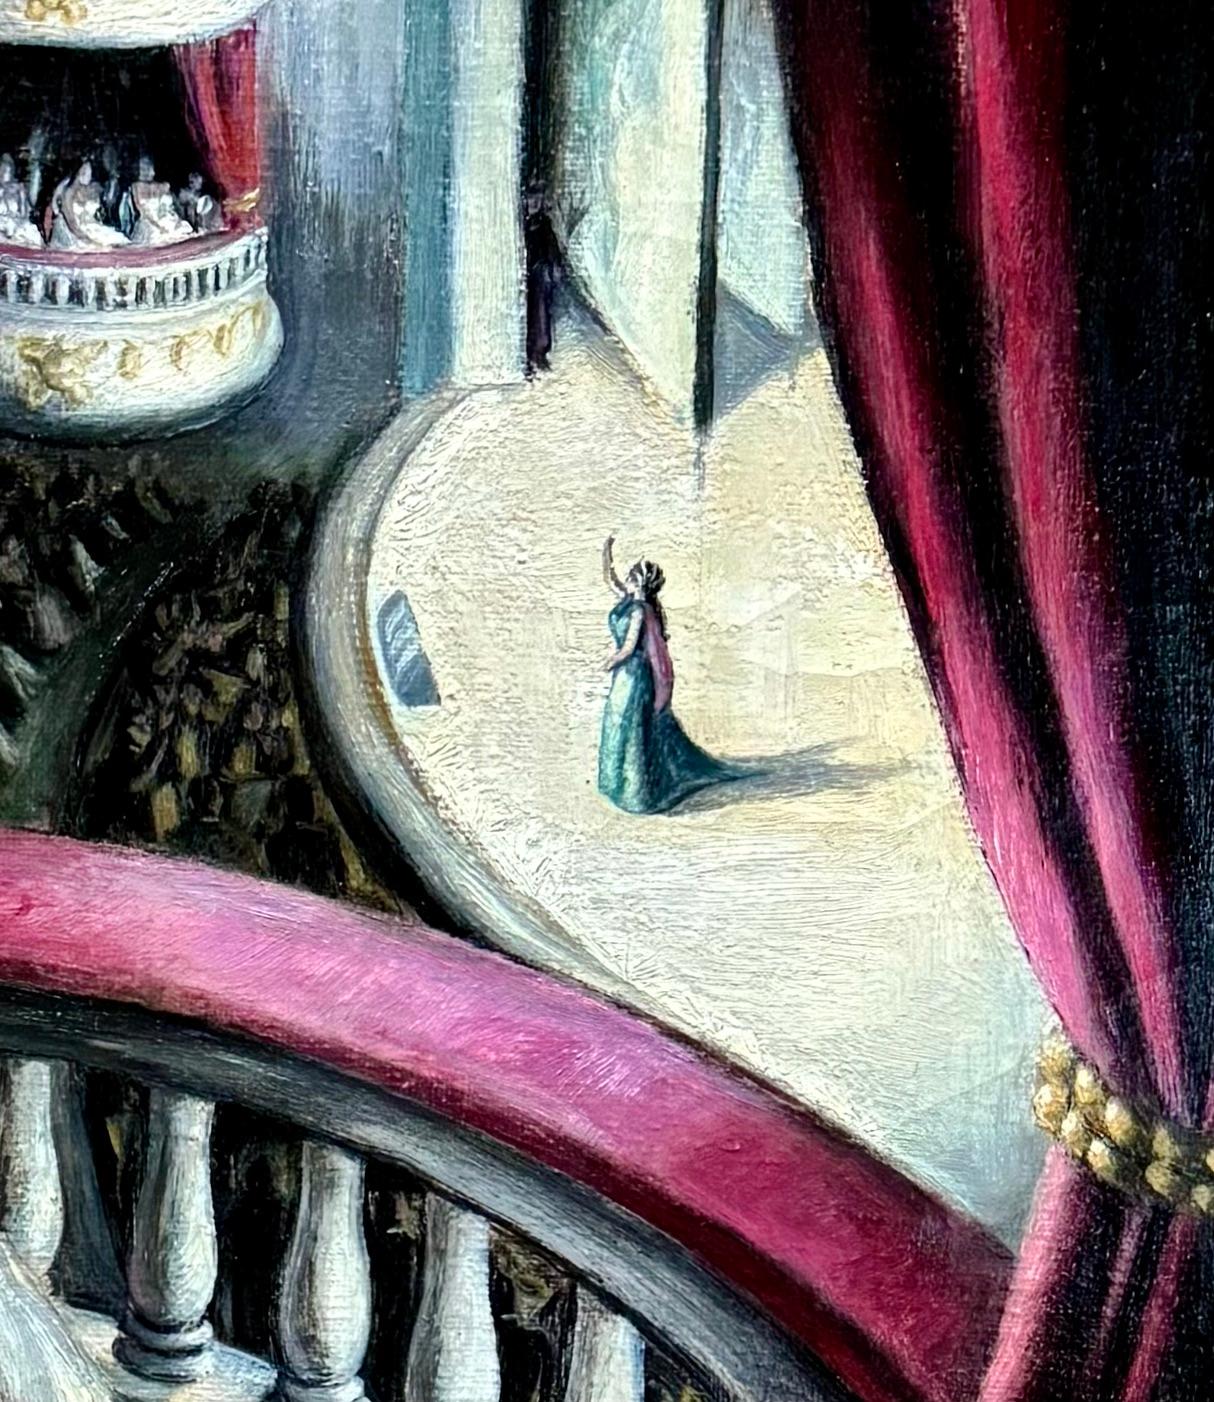 « À l'Opéra » WPA Réalisme social du milieu du 20e siècle Théâtre moderne de scène américaine

John Winters (1904 - 1983)
